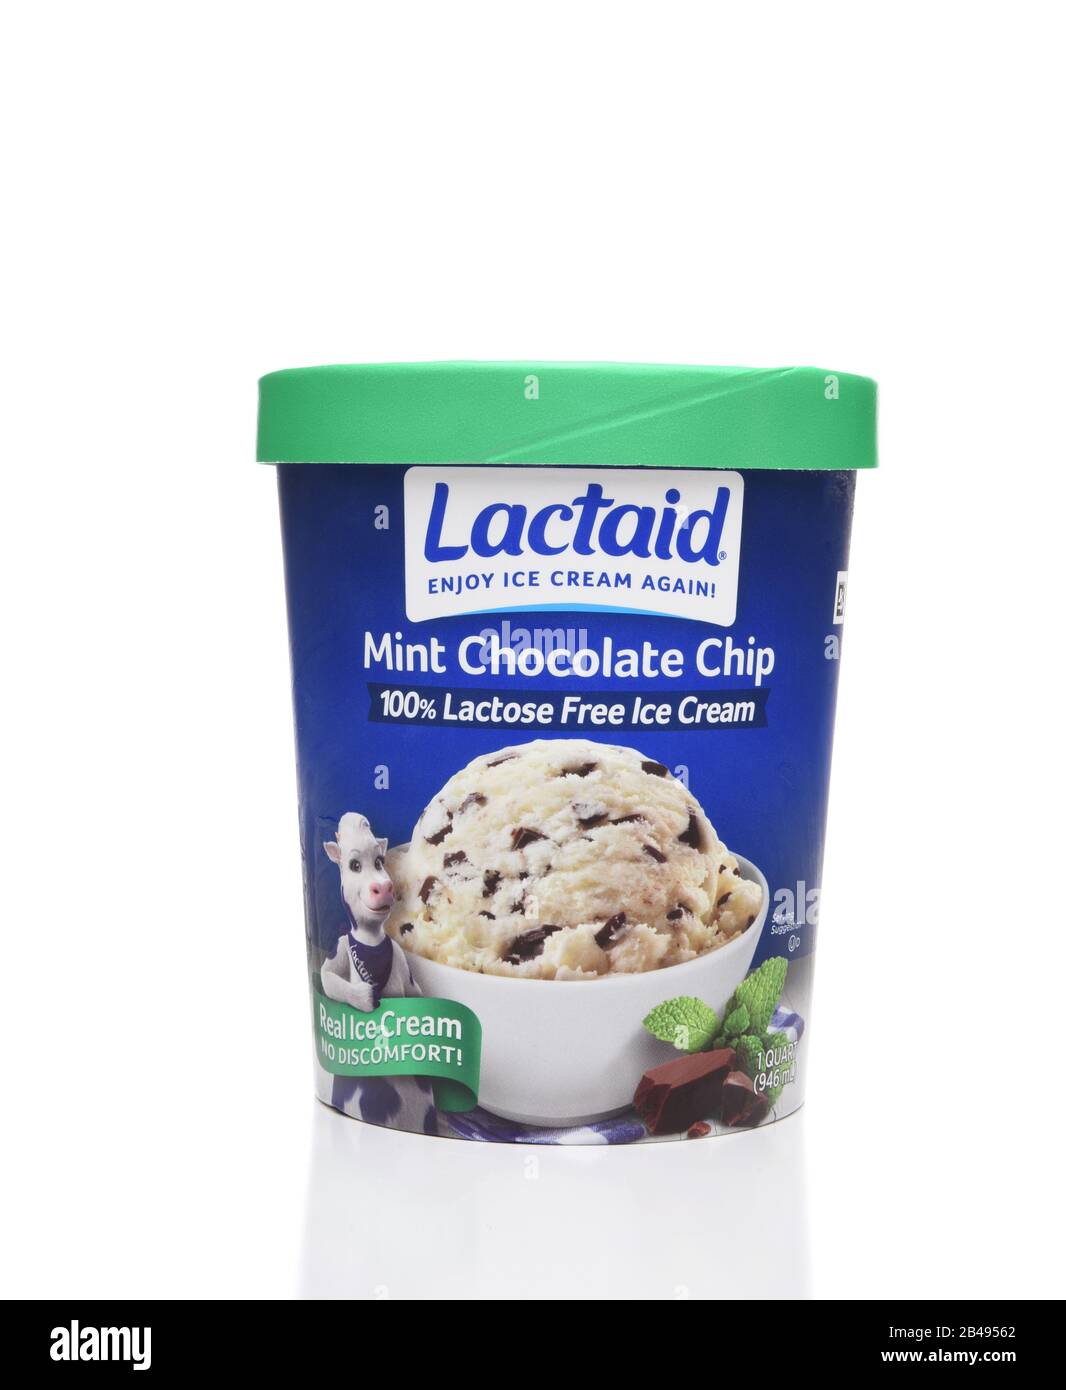 Irvine, CA - 6. AUGUST 2018: Ein Karton mit Lactaid Laktose Free Mint Chocolate Chip Eiscreme. Lactaid stellt eine komplette Linie laktosefreier Milchprodukte her Stockfoto